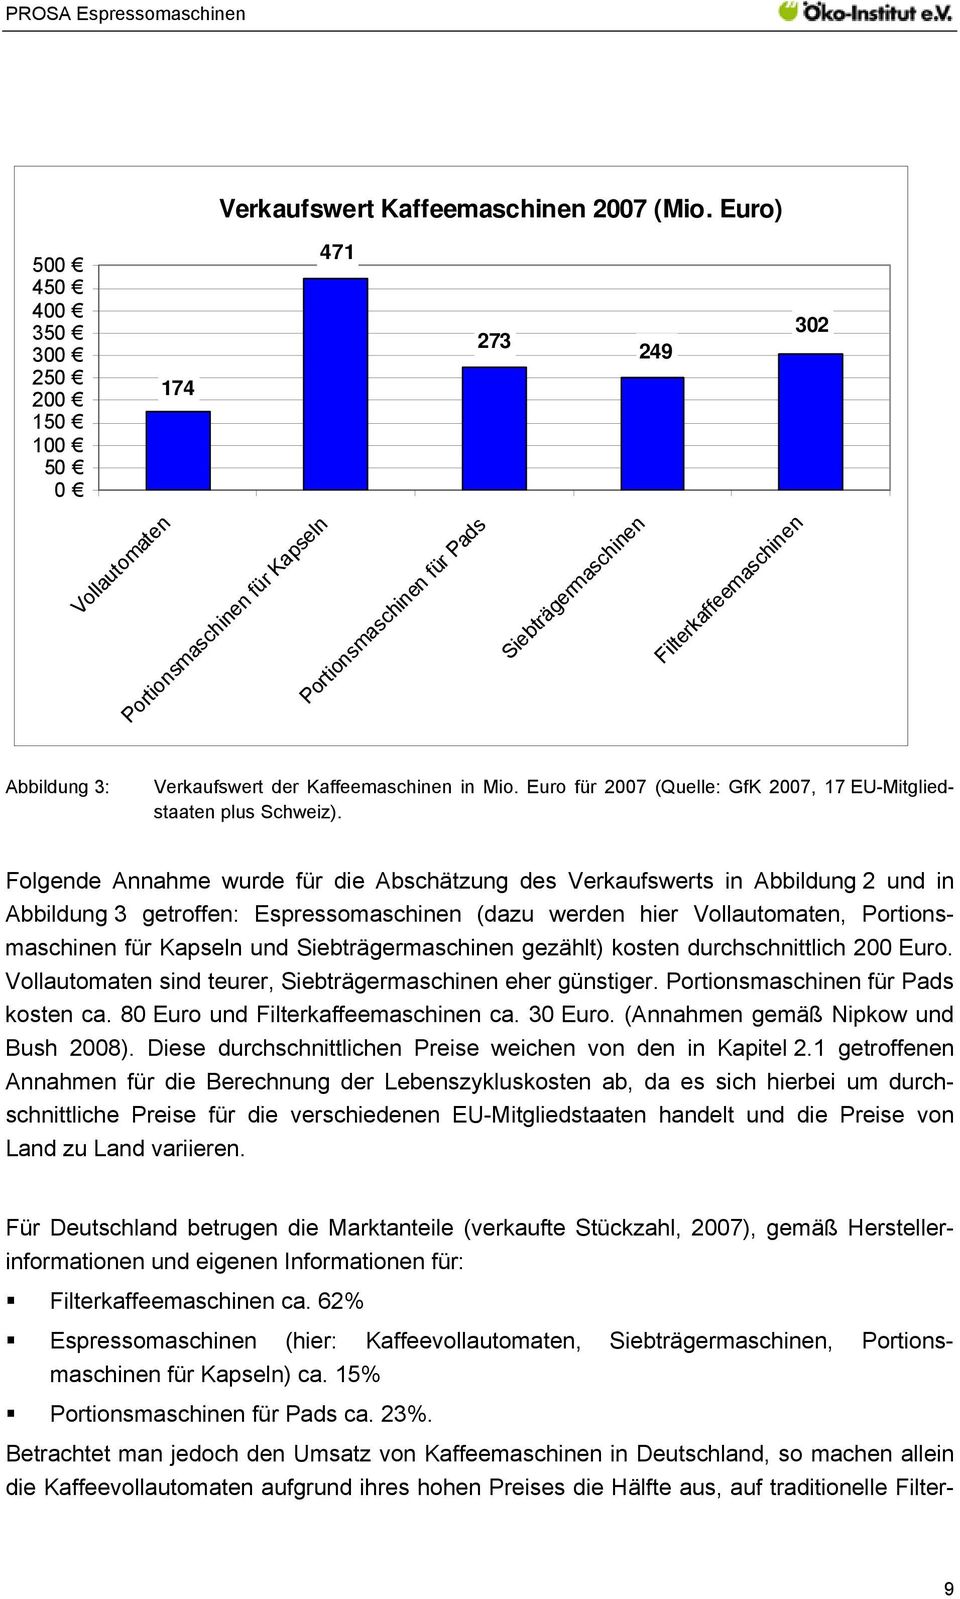 Verkaufswert der Kaffeemaschinen in Mio. Euro für 2007 (Quelle: GfK 2007, 17 EU-Mitgliedstaaten plus Schweiz).